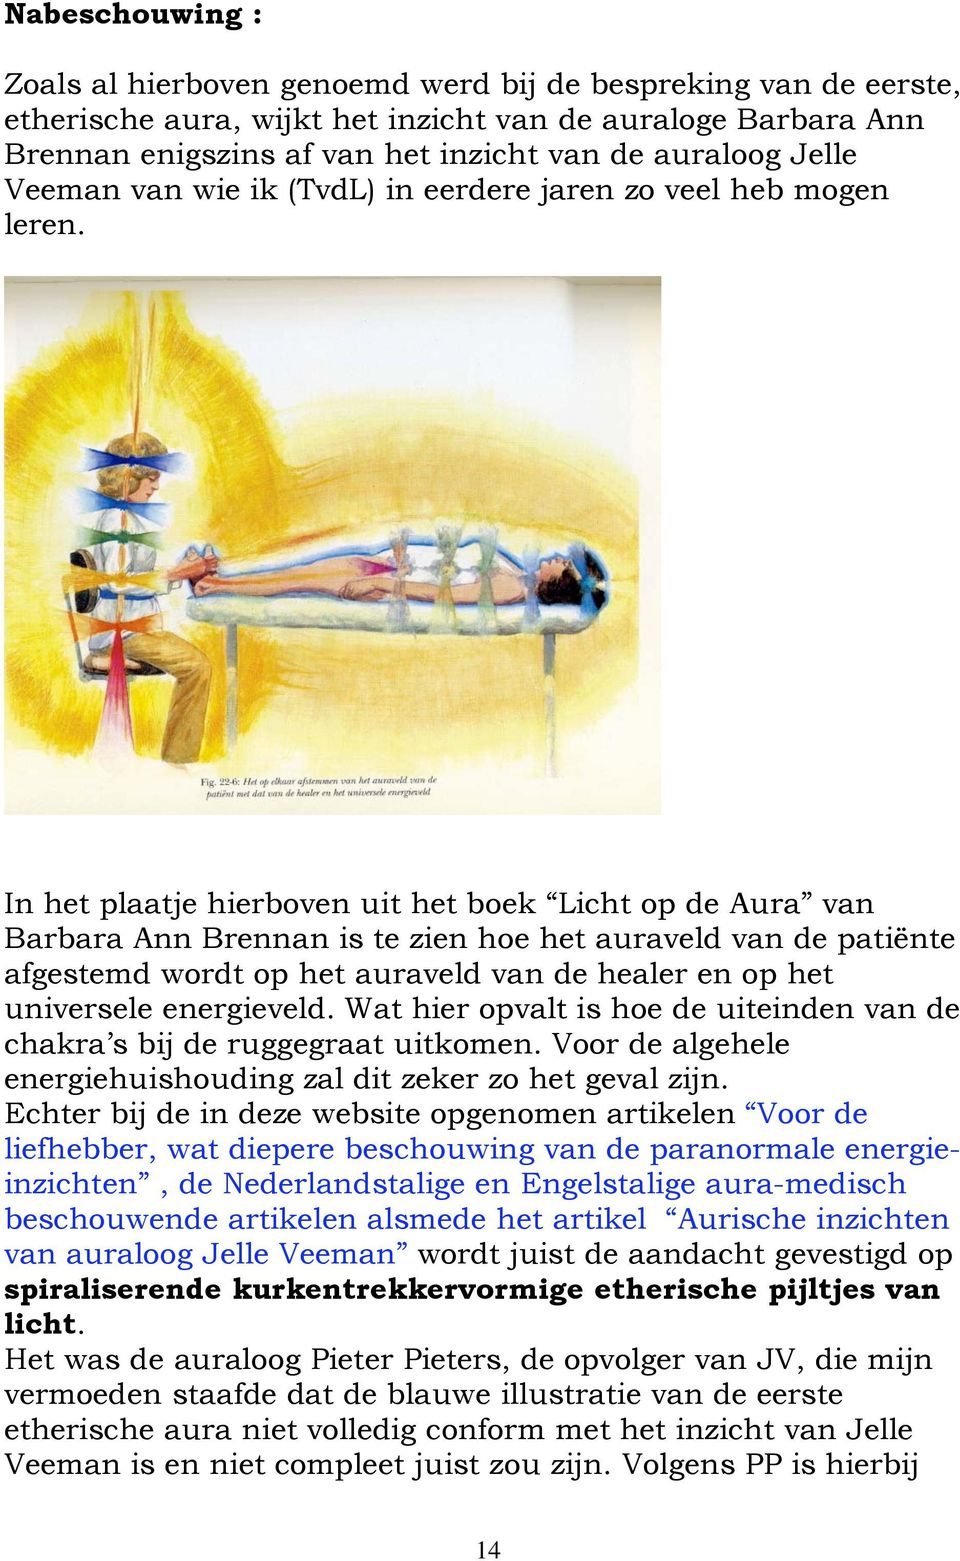 In het plaatje hierboven uit het boek Licht op de Aura van Barbara Ann Brennan is te zien hoe het auraveld van de patiënte afgestemd wordt op het auraveld van de healer en op het universele